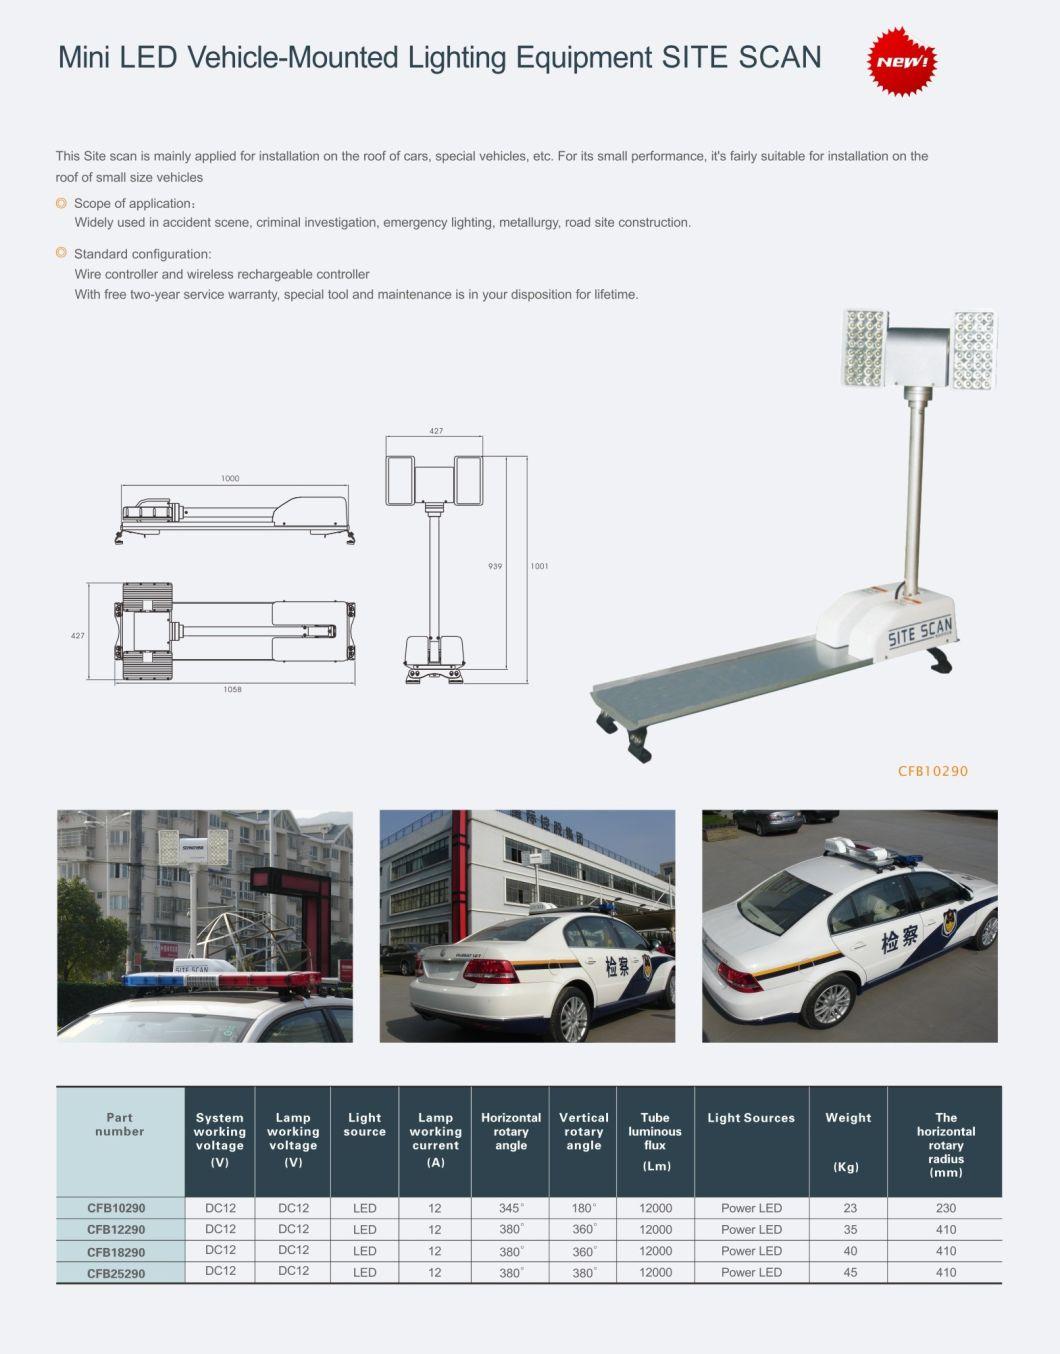 Senken Mini LED Vehicle-Mounted Lighting Equipment Site Scan Light Tower CFB10290